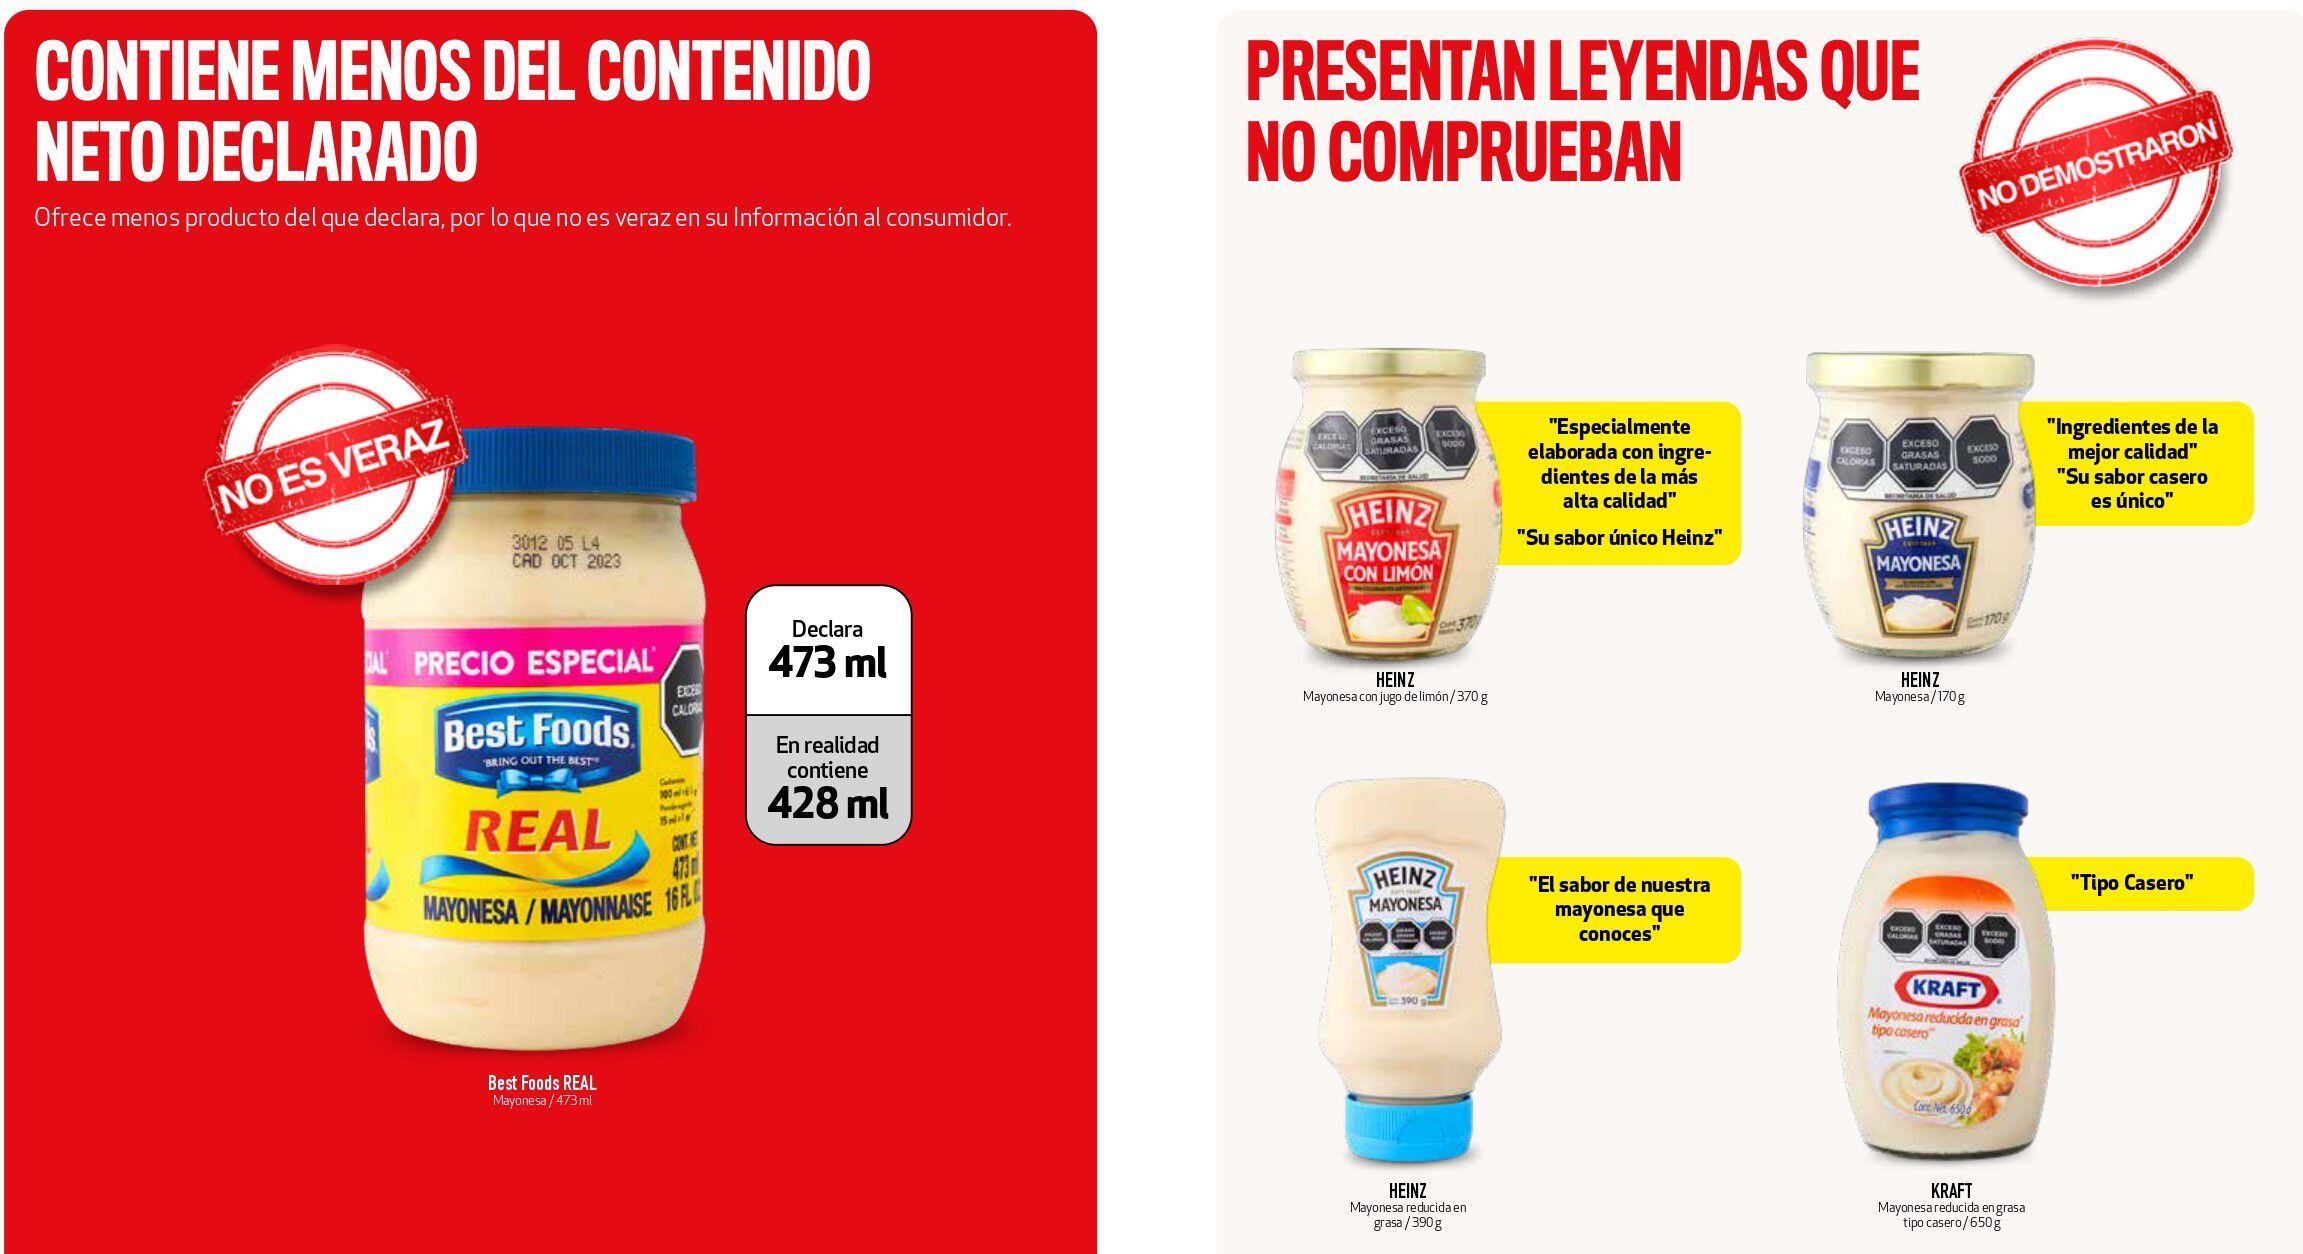 Las mayonesas reprobadas por Profeco incumplen con el etiquetado o el contenido. (Foto: Revista del Consumidor)